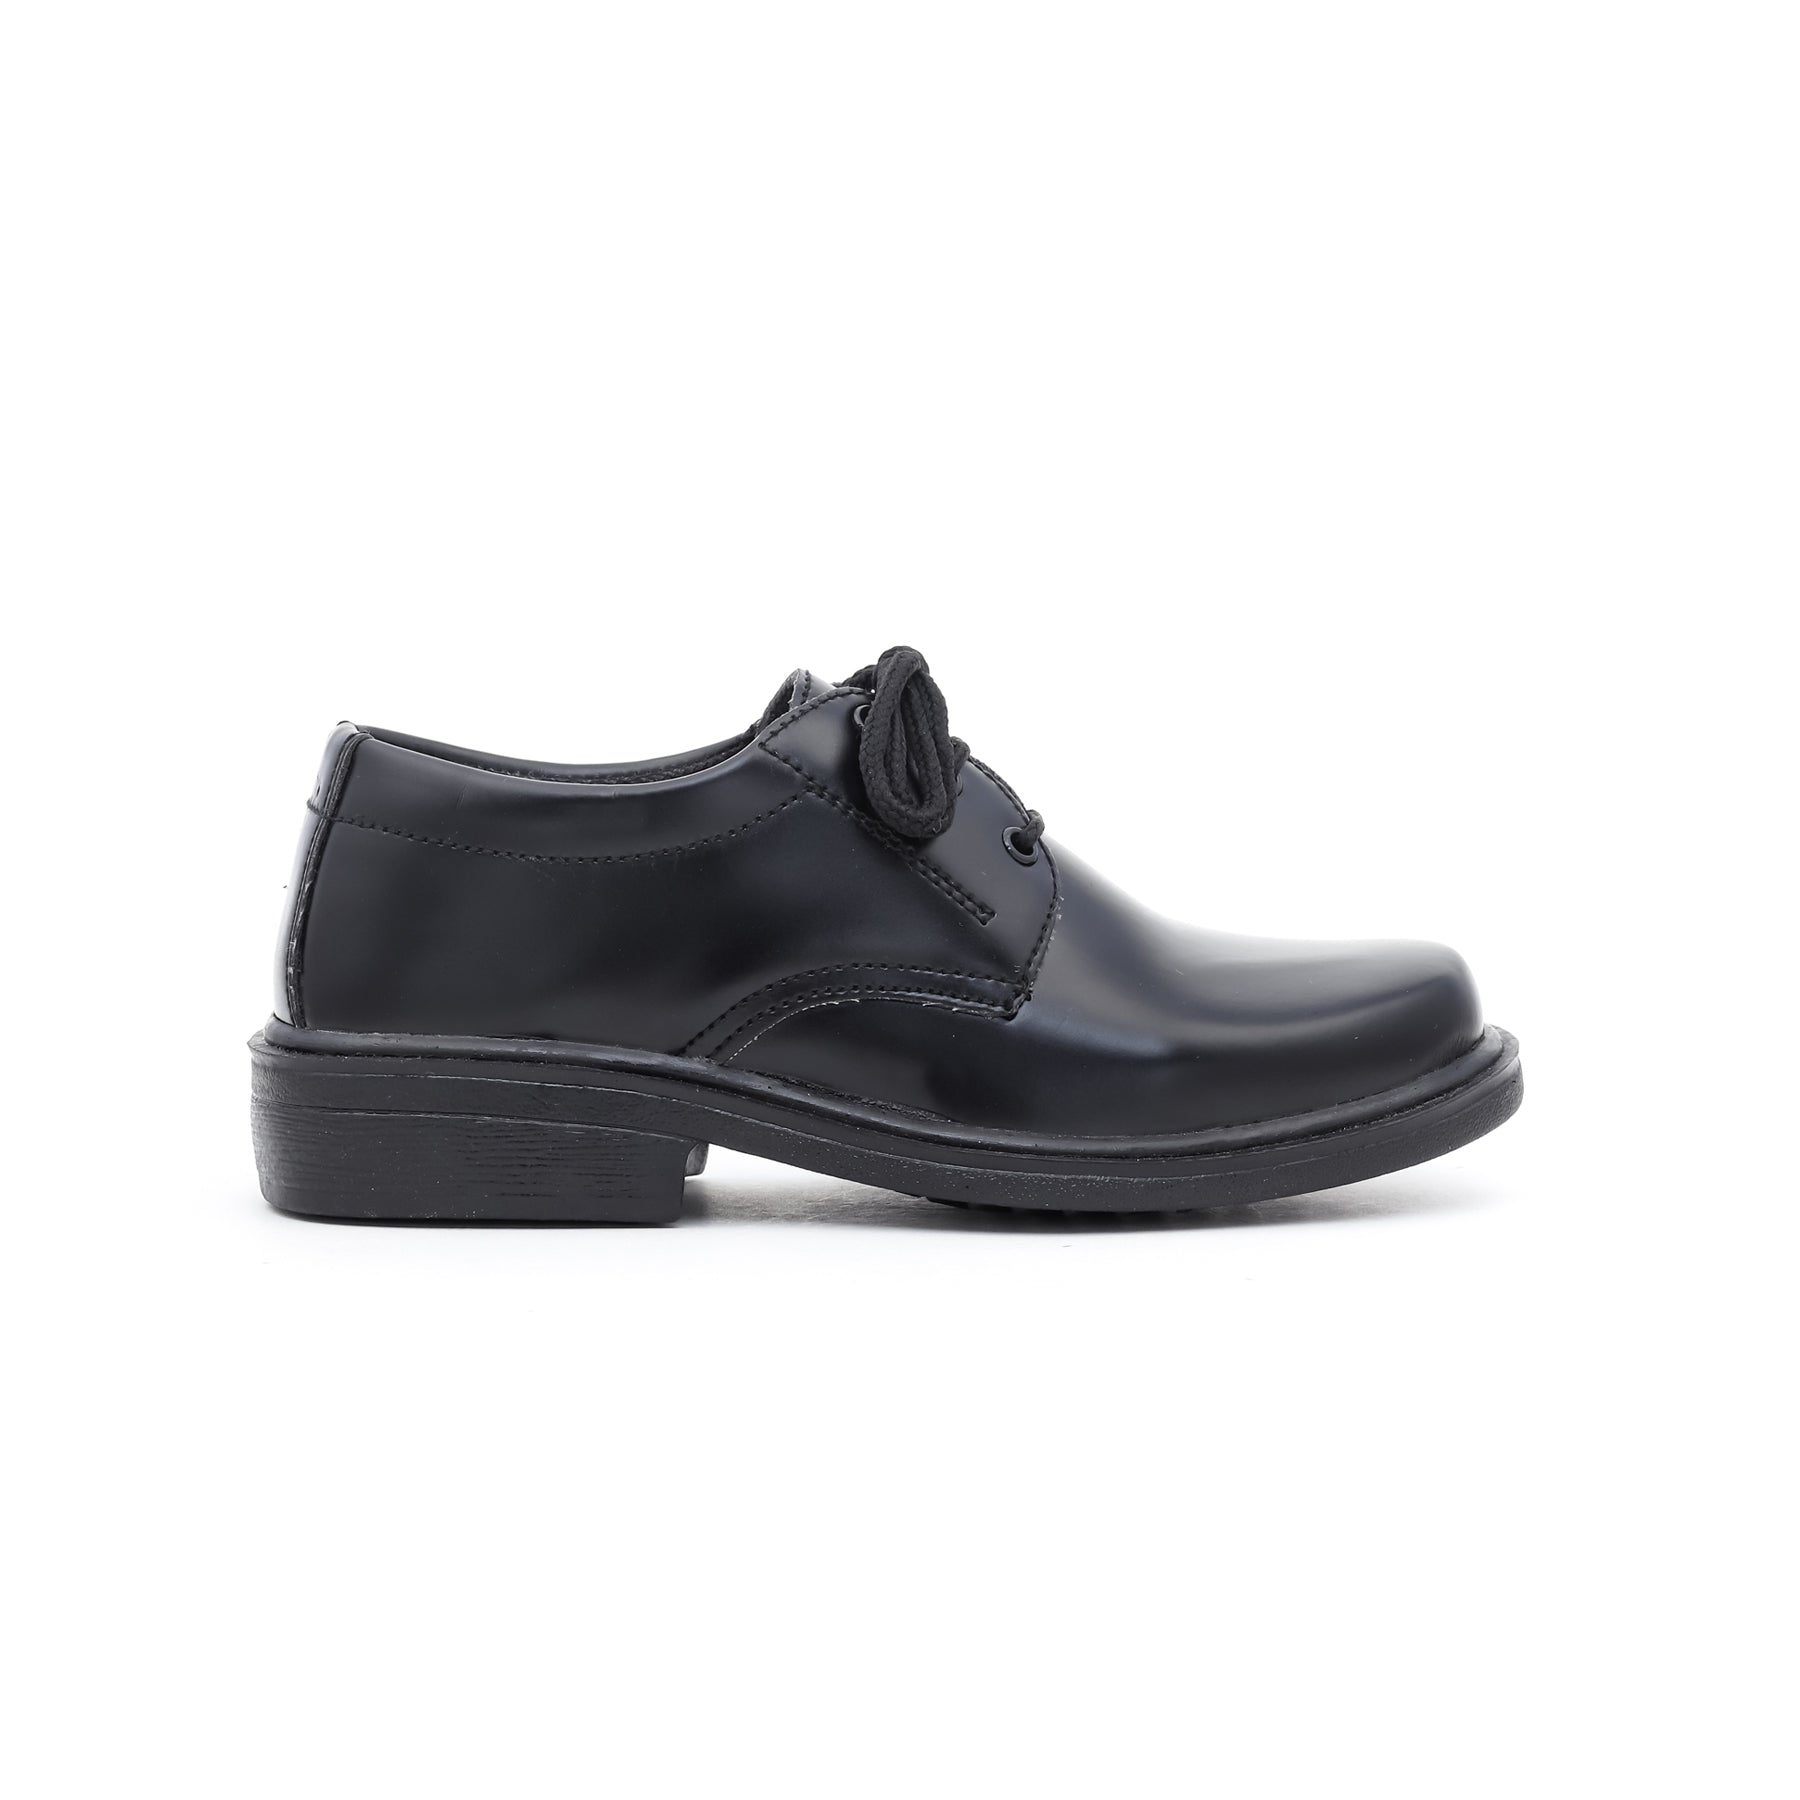 Boys Black School Shoes SK1052